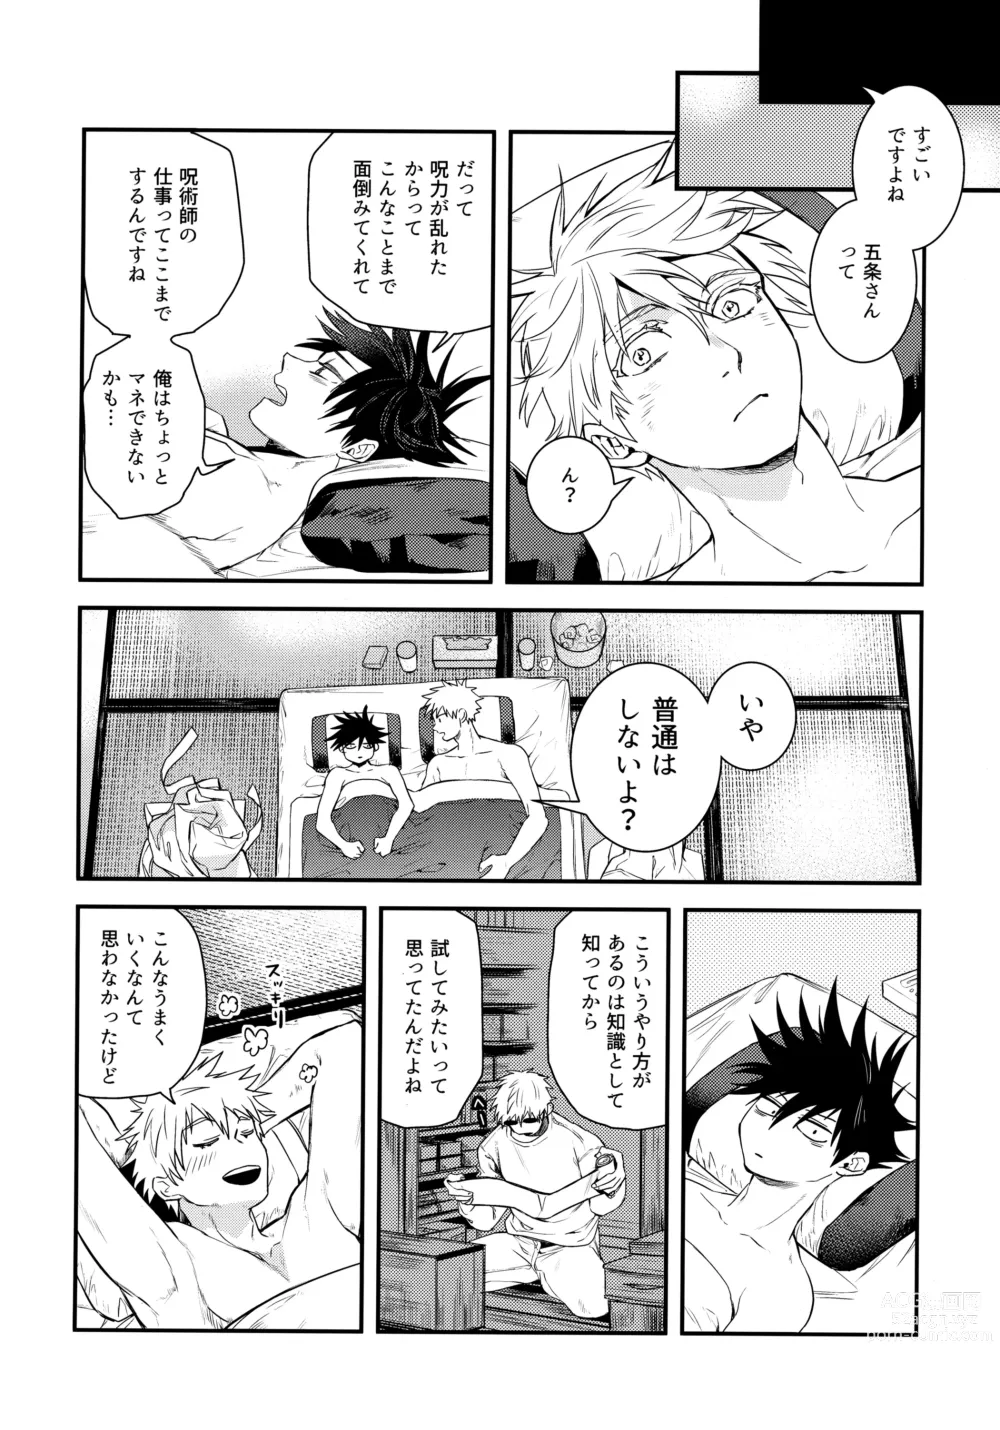 Page 15 of doujinshi Jyuryoku no Koukan Dekiru?